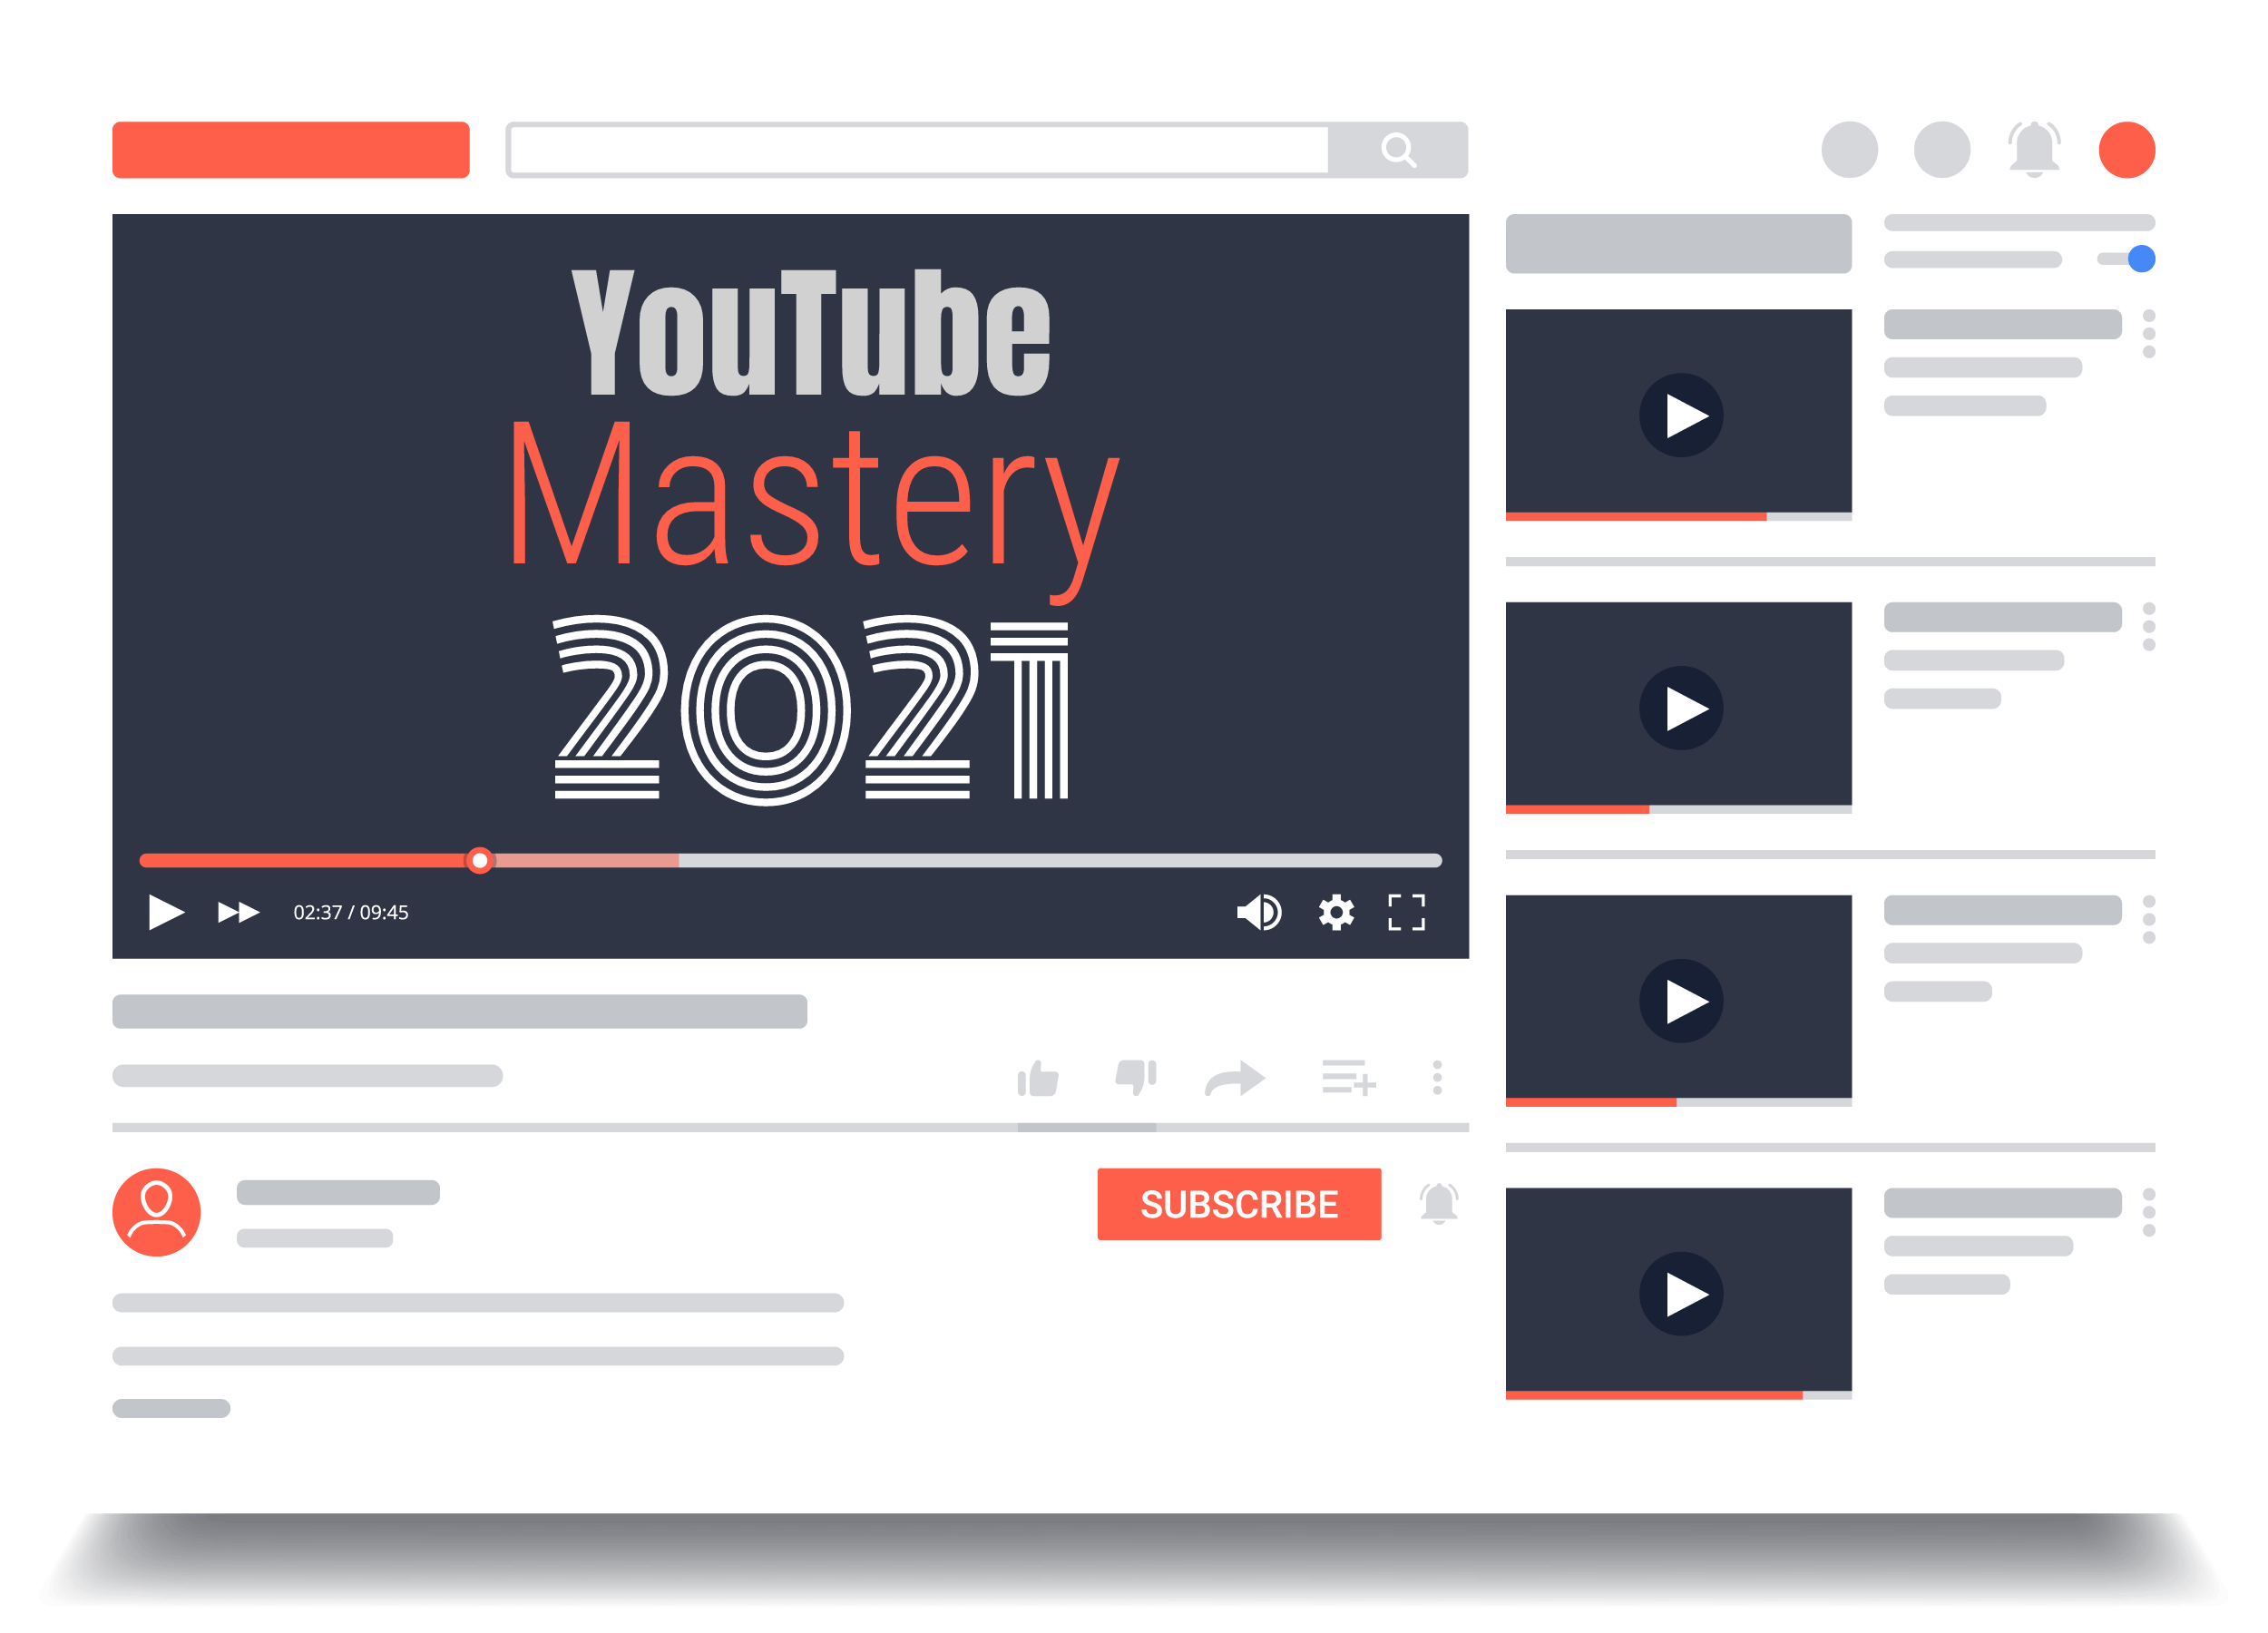 YouTube Mastery 2021